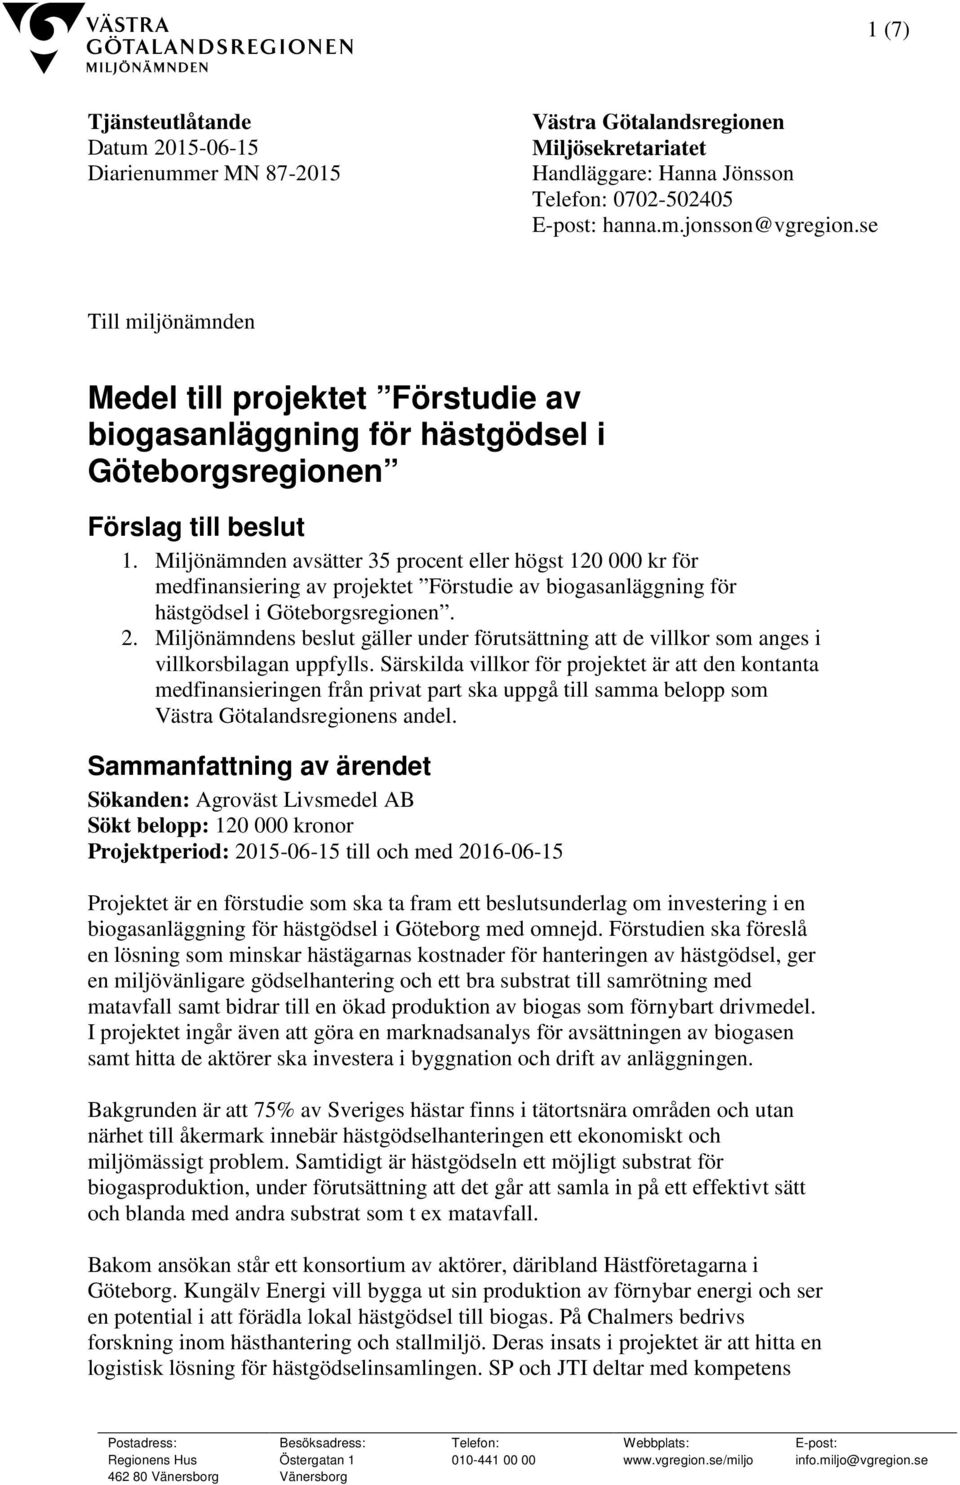 Miljönämnden avsätter 35 procent eller högst 120 000 kr för medfinansiering av projektet Förstudie av biogasanläggning för hästgödsel i Göteborgsregionen. 2.